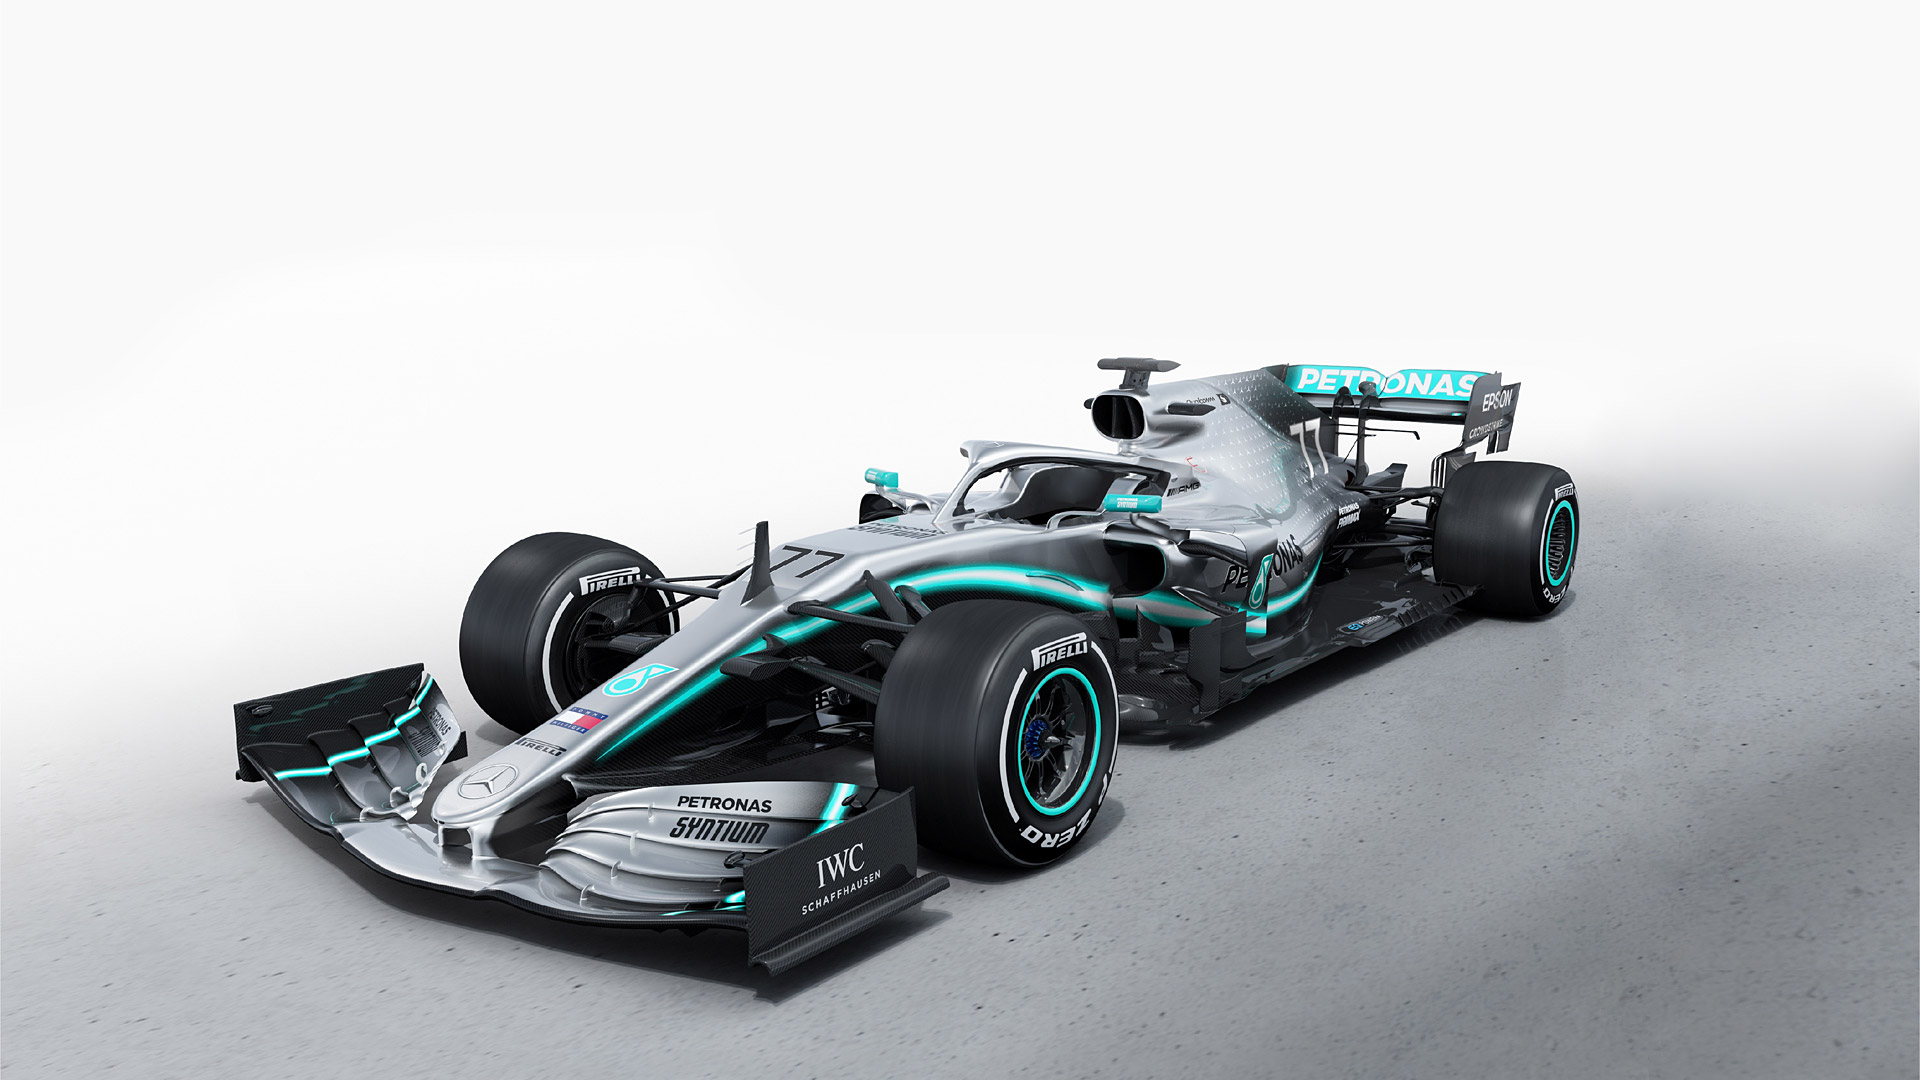 Mercedes F1 Car 2020 , HD Wallpaper & Backgrounds